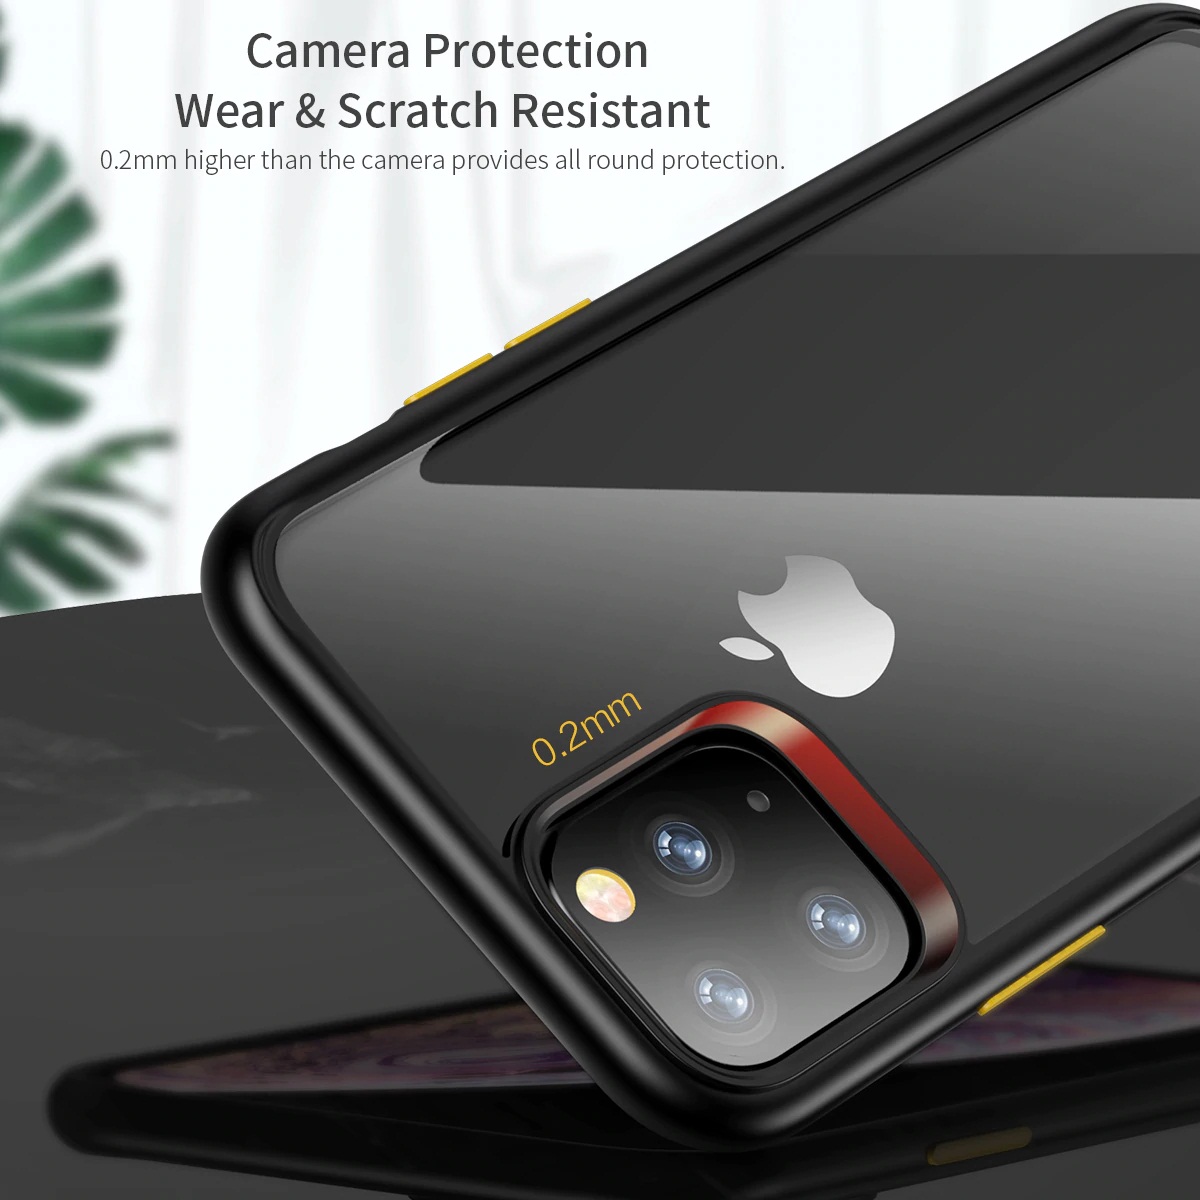 Ốp lưng silicon chống sốc trong suốt viền màu cho iPhone 11 Pro - 11 Pro Max  Hiệu Rock Guard Pro